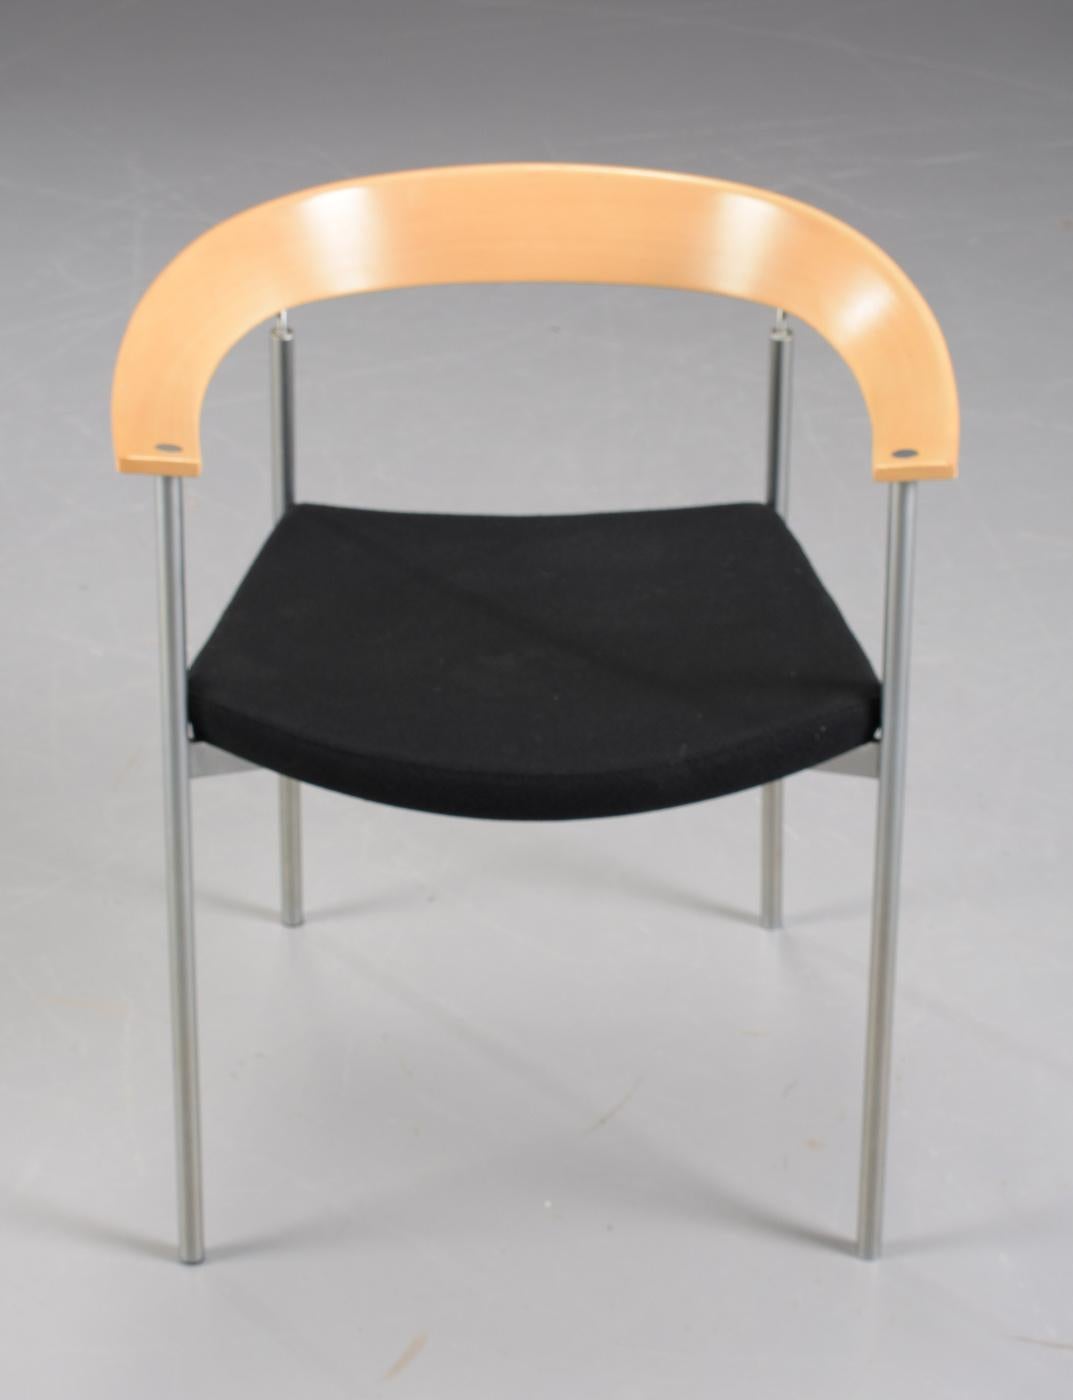 Ensemble de huit fauteuils danois empilables Johannes Foersom conçus en 1998 en tube d'acier, hêtre, chrome et cuir noir, fabriqués par Paustian.

Les chaises sont dotées d'un élégant accoudoir et d'un dossier de forme ronde et organique en hêtre,